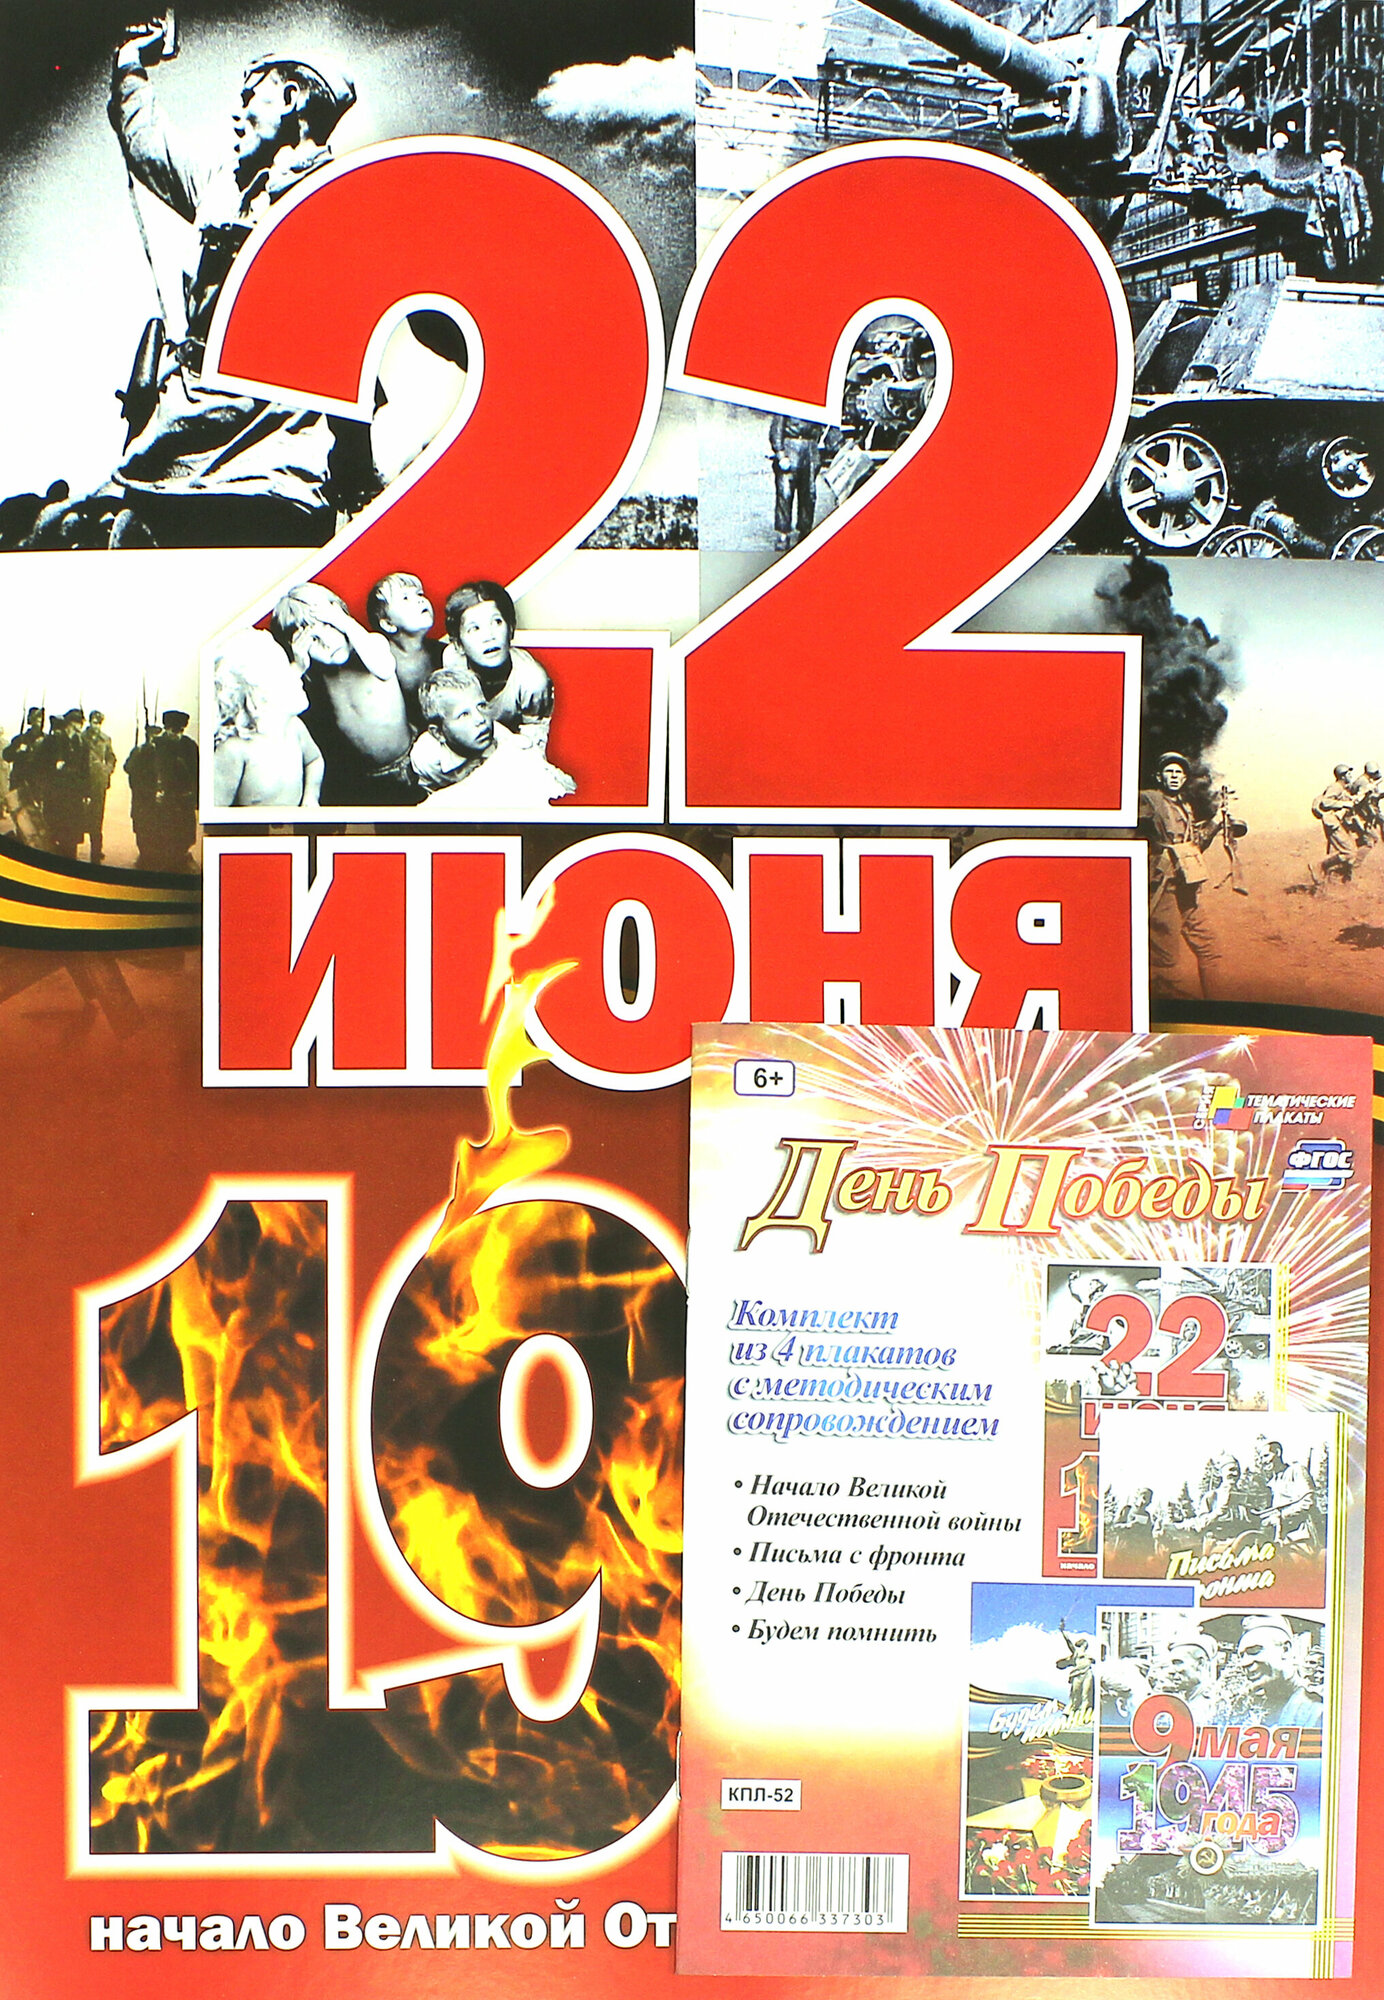 Комплект плакатов "День Победы". - фото №4